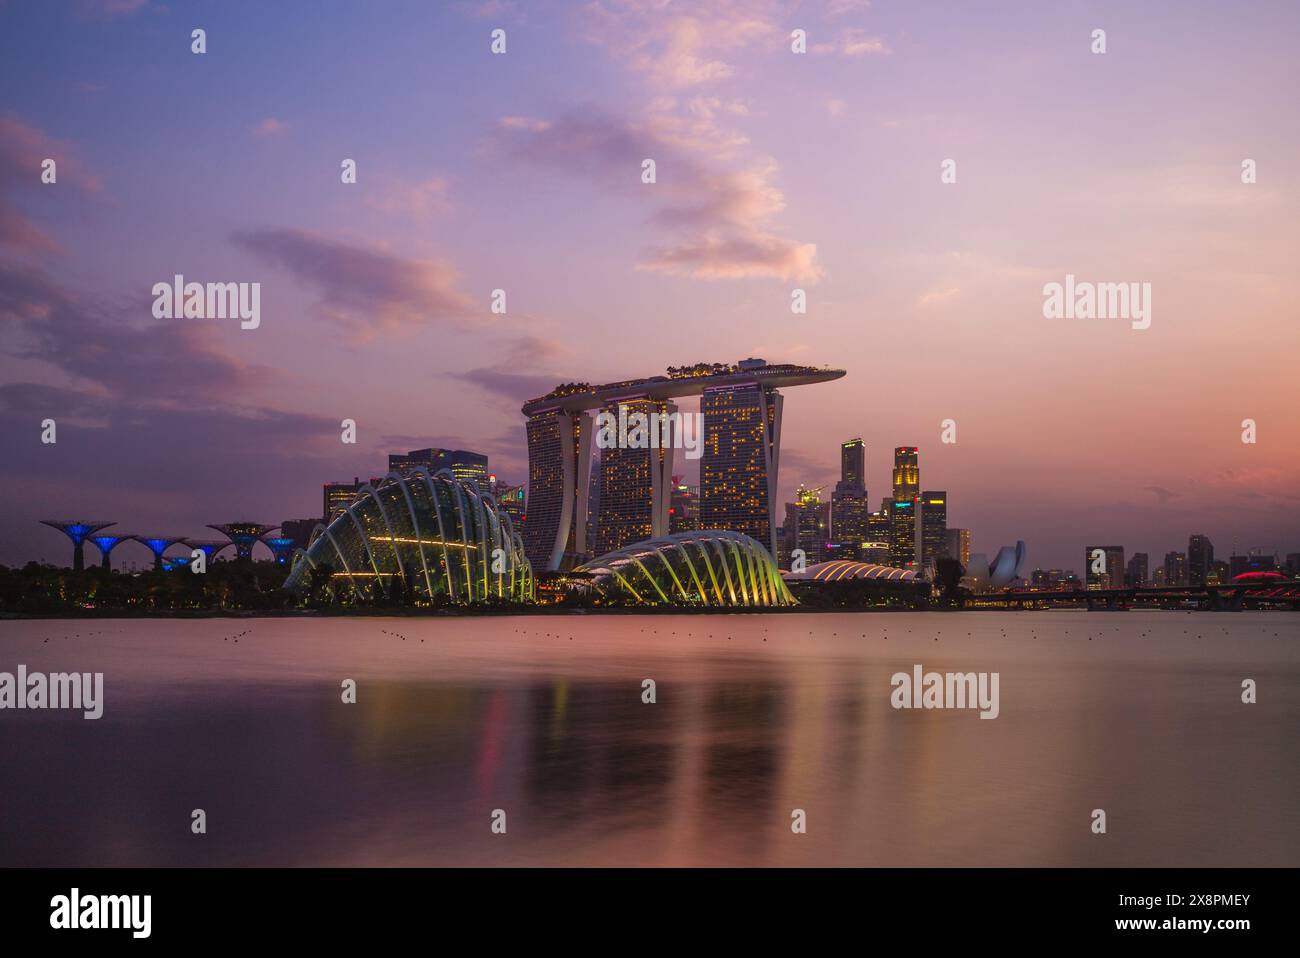 4 febbraio 2020: Skyline di singapore presso la baia del porto turistico con un edificio iconico come il superalbero, le sabbie e il museo artscience. Marina Bay è il nuovo d Foto Stock